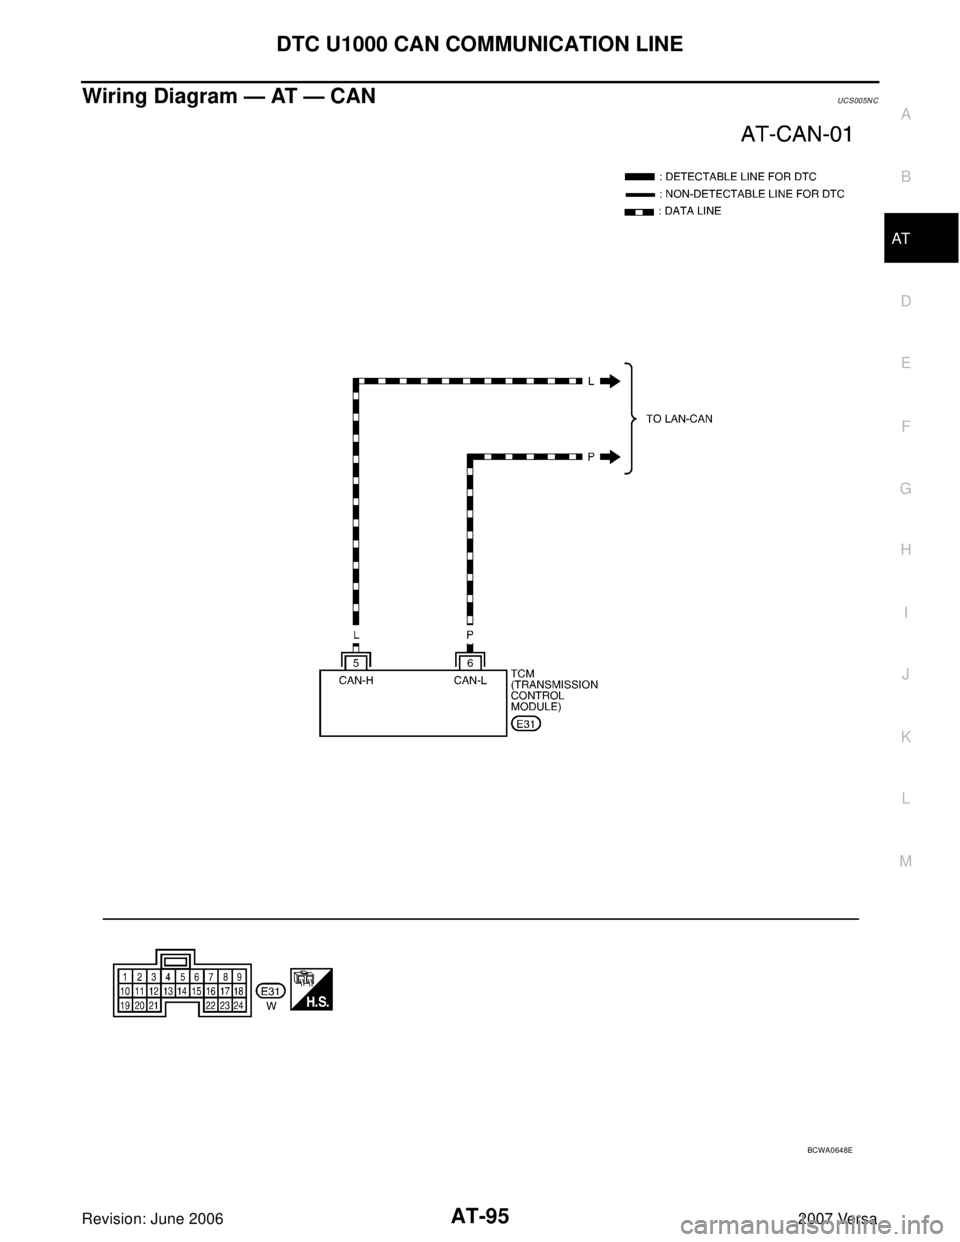 NISSAN VERSA 2006  Workshop  Service Repair Manual DTC U1000 CAN COMMUNICATION LINE
AT-95
D
E
F
G
H
I
J
K
L
MA
B
AT
Revision: June 20062007 Versa
Wiring Diagram — AT — CANUCS005N C
BCWA0648E 